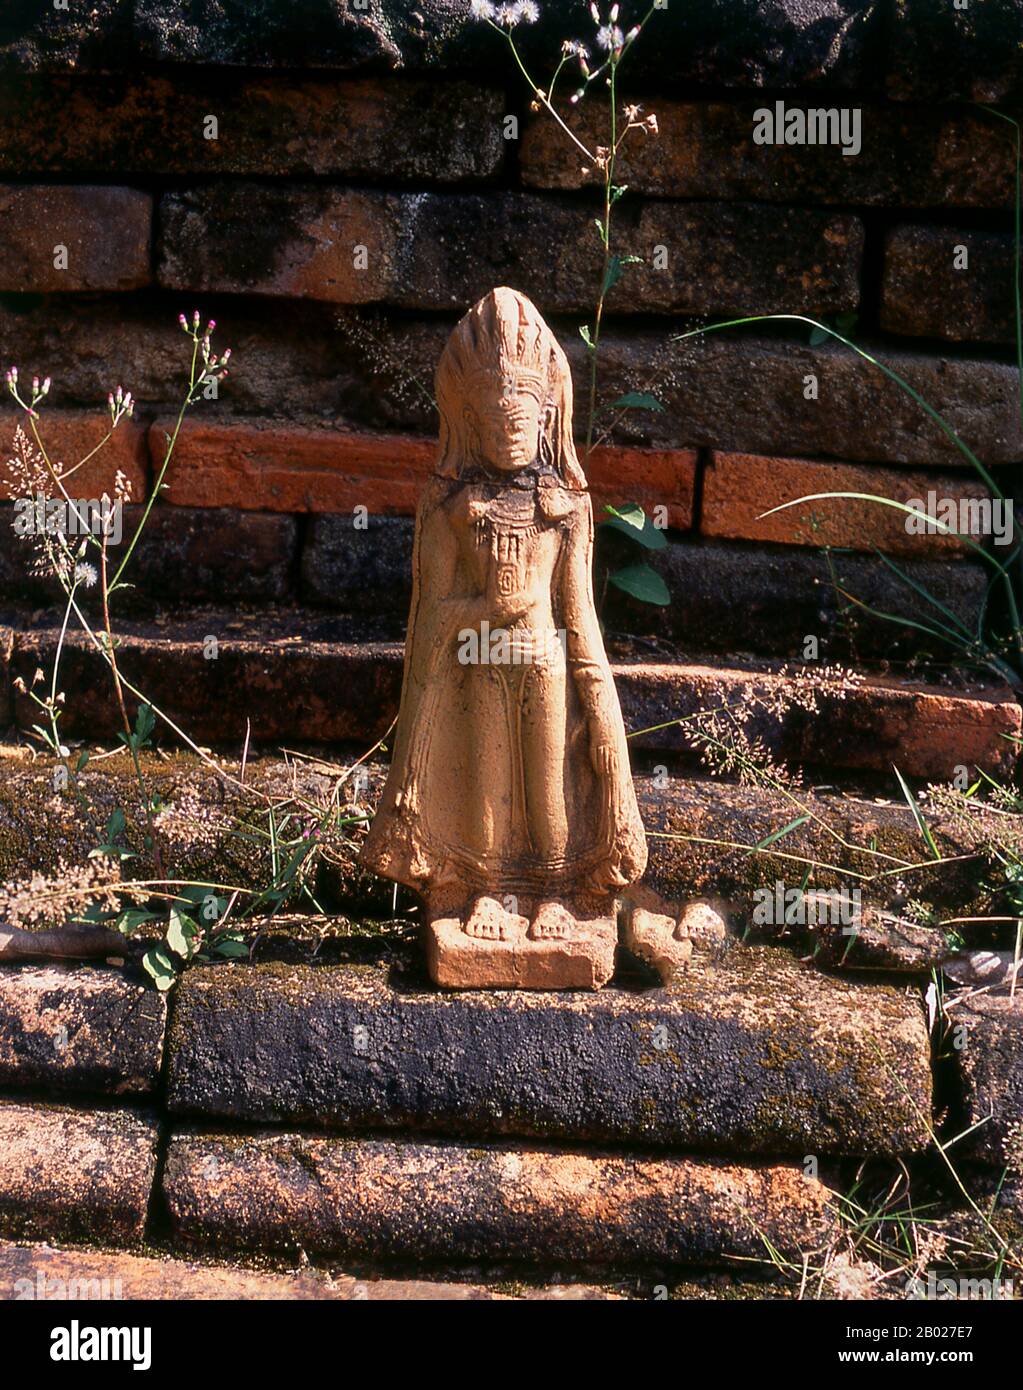 Wat Sang Ka, conosciuto anche come Wat Sang Ka Ram, si pensa che sia stato fondato nel 14th o 15th secolo CE. Fu scavato e restaurato dal Dipartimento di Belle Arti nel 1983-85. I manufatti trovati durante lo scavo includono ceramiche provenienti da forni a San Kamphaeng, Vien Ka Long e Sri Satchanalai. Un'immagine bronzea di Chiang Saen Buddha e le compresse di Haripunchai Buddha sono state anche scoperte, insieme a frammenti di altre immagini di Buddha in entrambi gli stili Lan Na e Sukhothai. Chiang mai, a volte scritto come 'Chiengmai' o 'Chiangmai', è la città più grande e culturalmente significativa nel nord della Thailandia Foto Stock